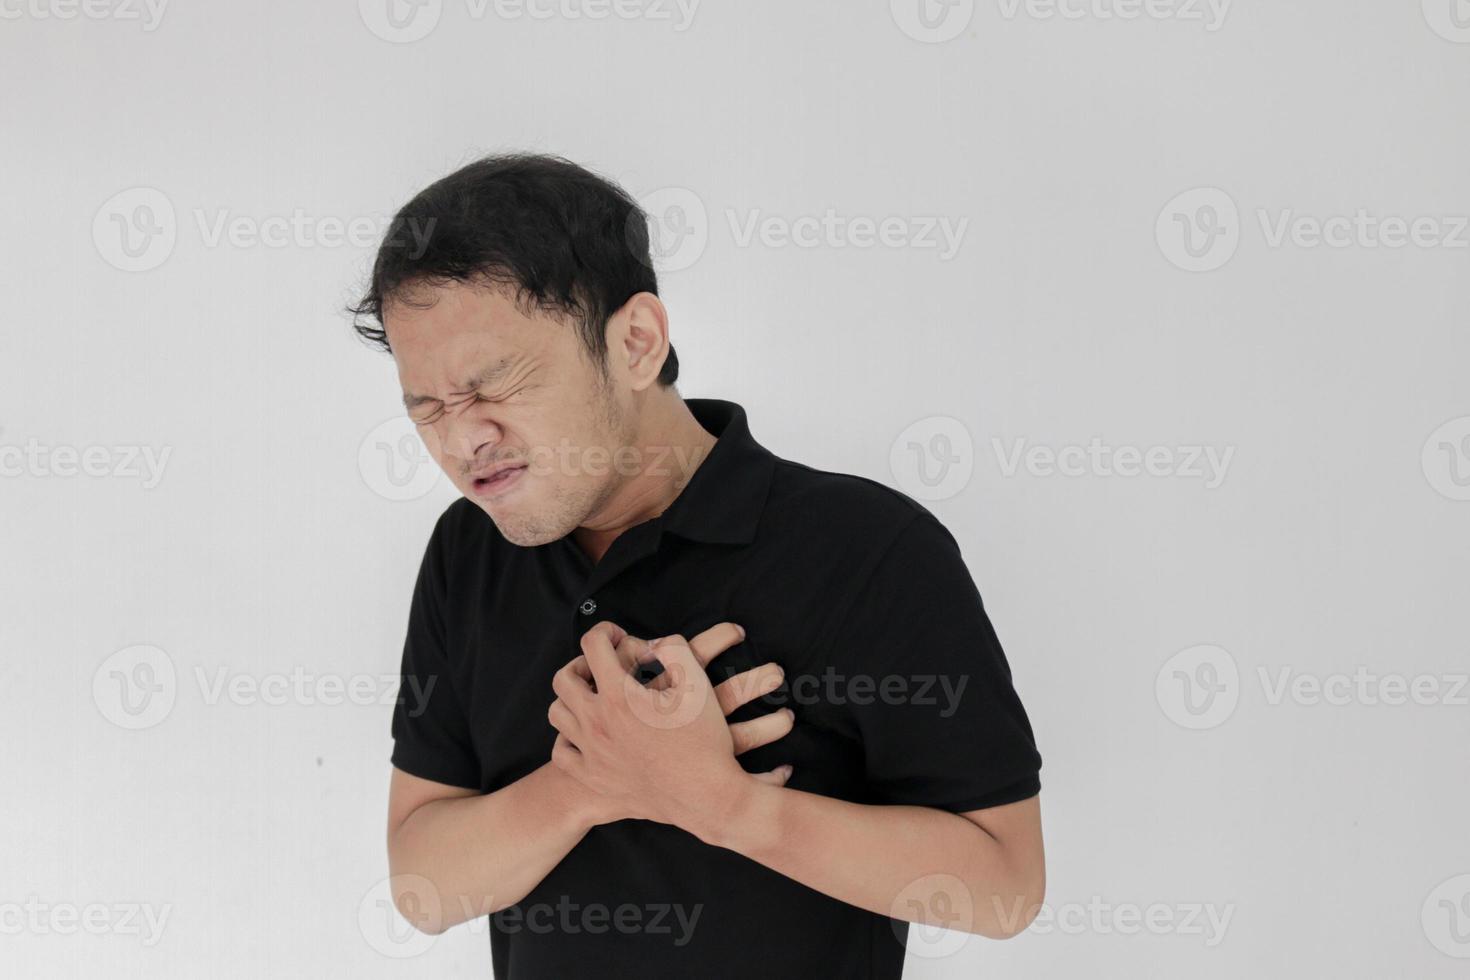 crise cardiaque ou cœur brisé d'un jeune homme asiatique avec une émotion blessée porter une chemise noire photo